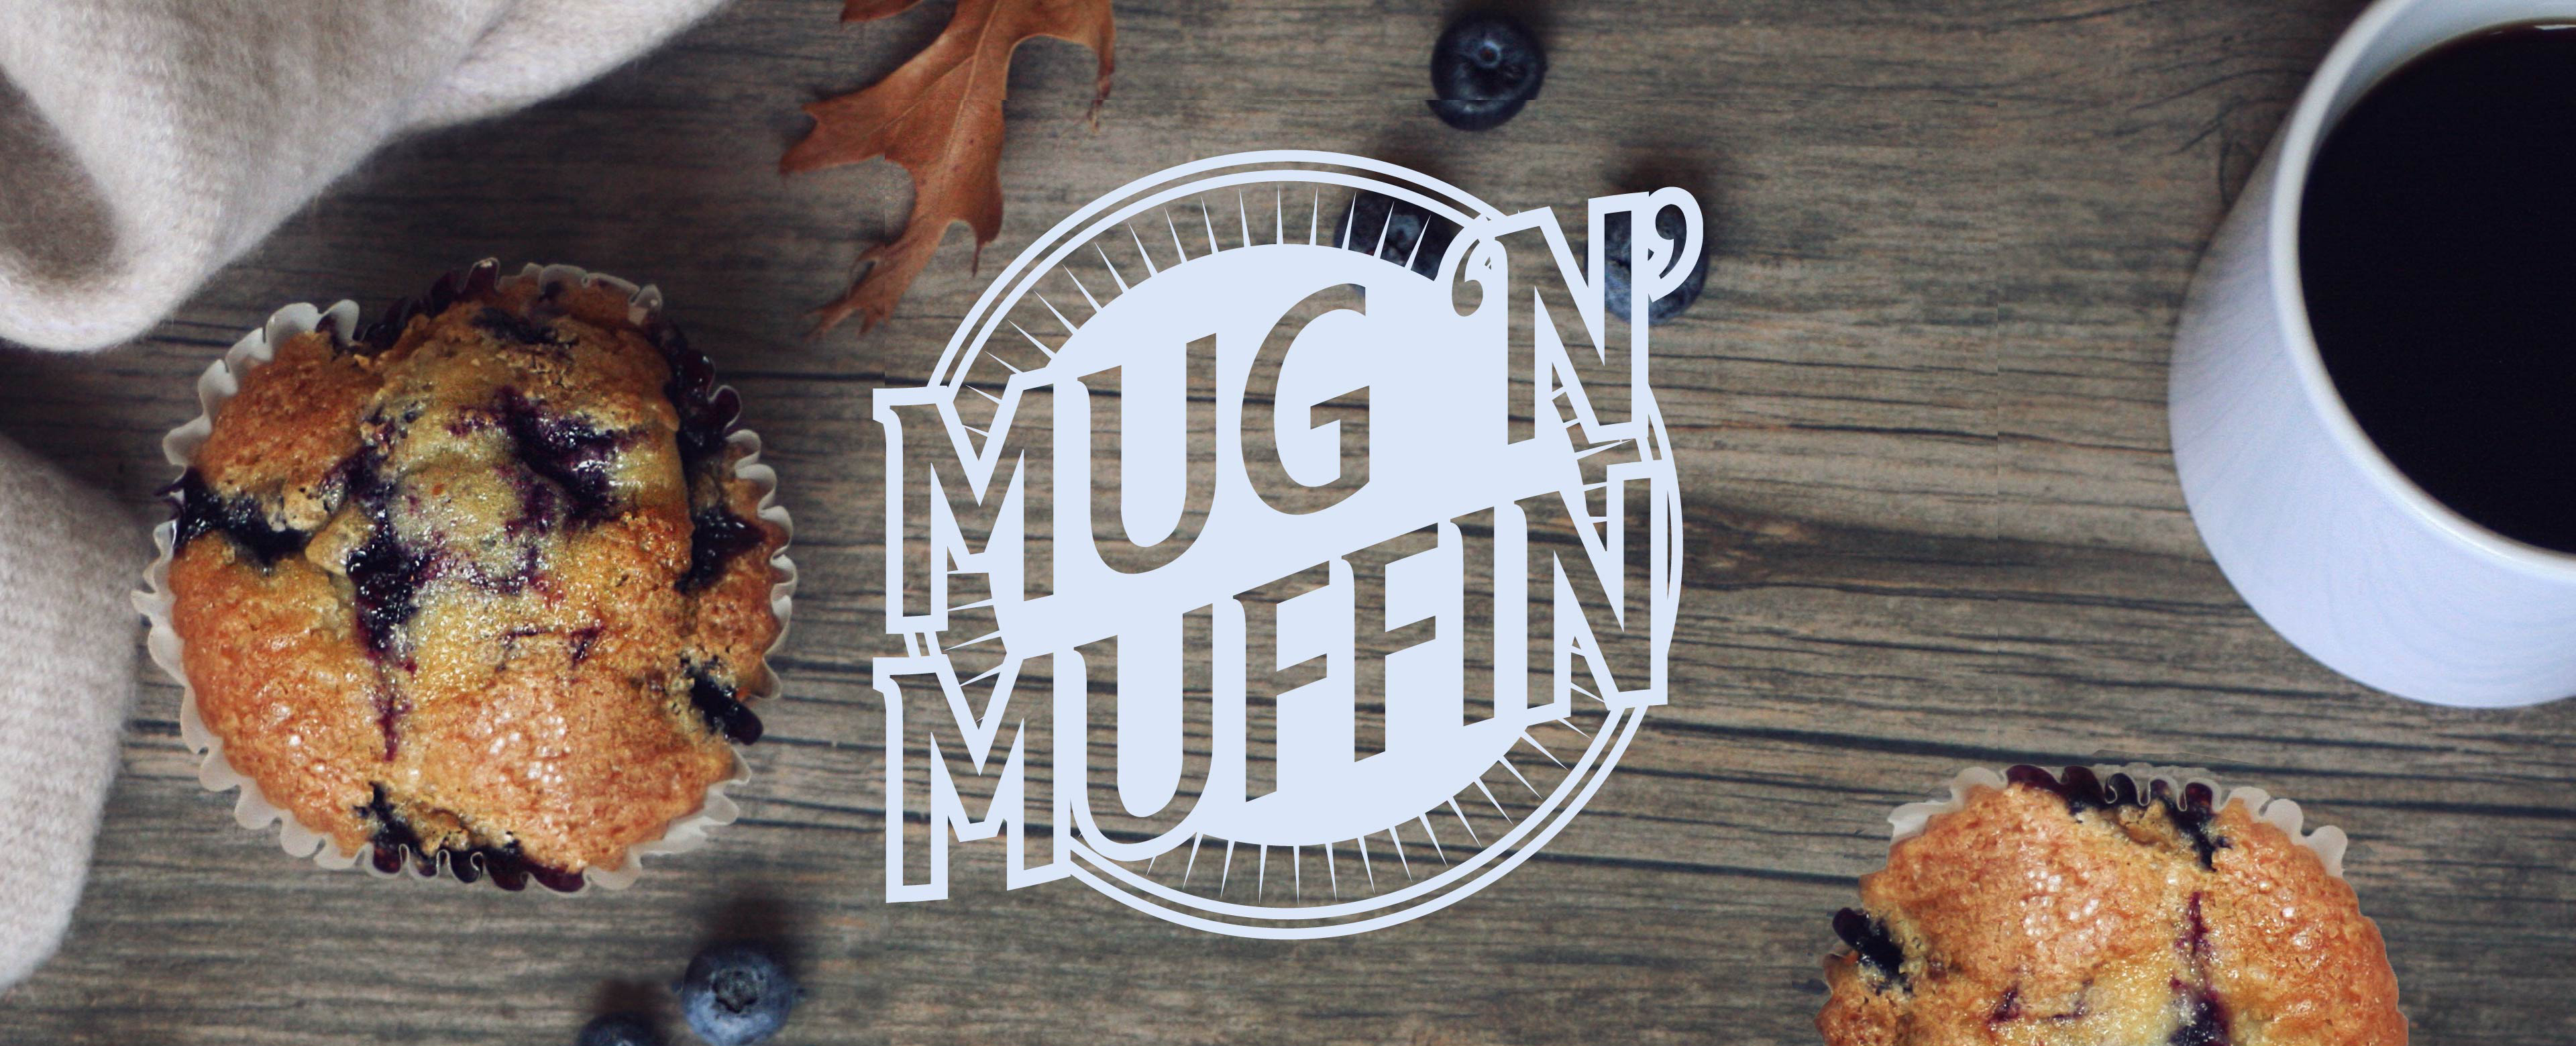 Mug 'n' Muffin